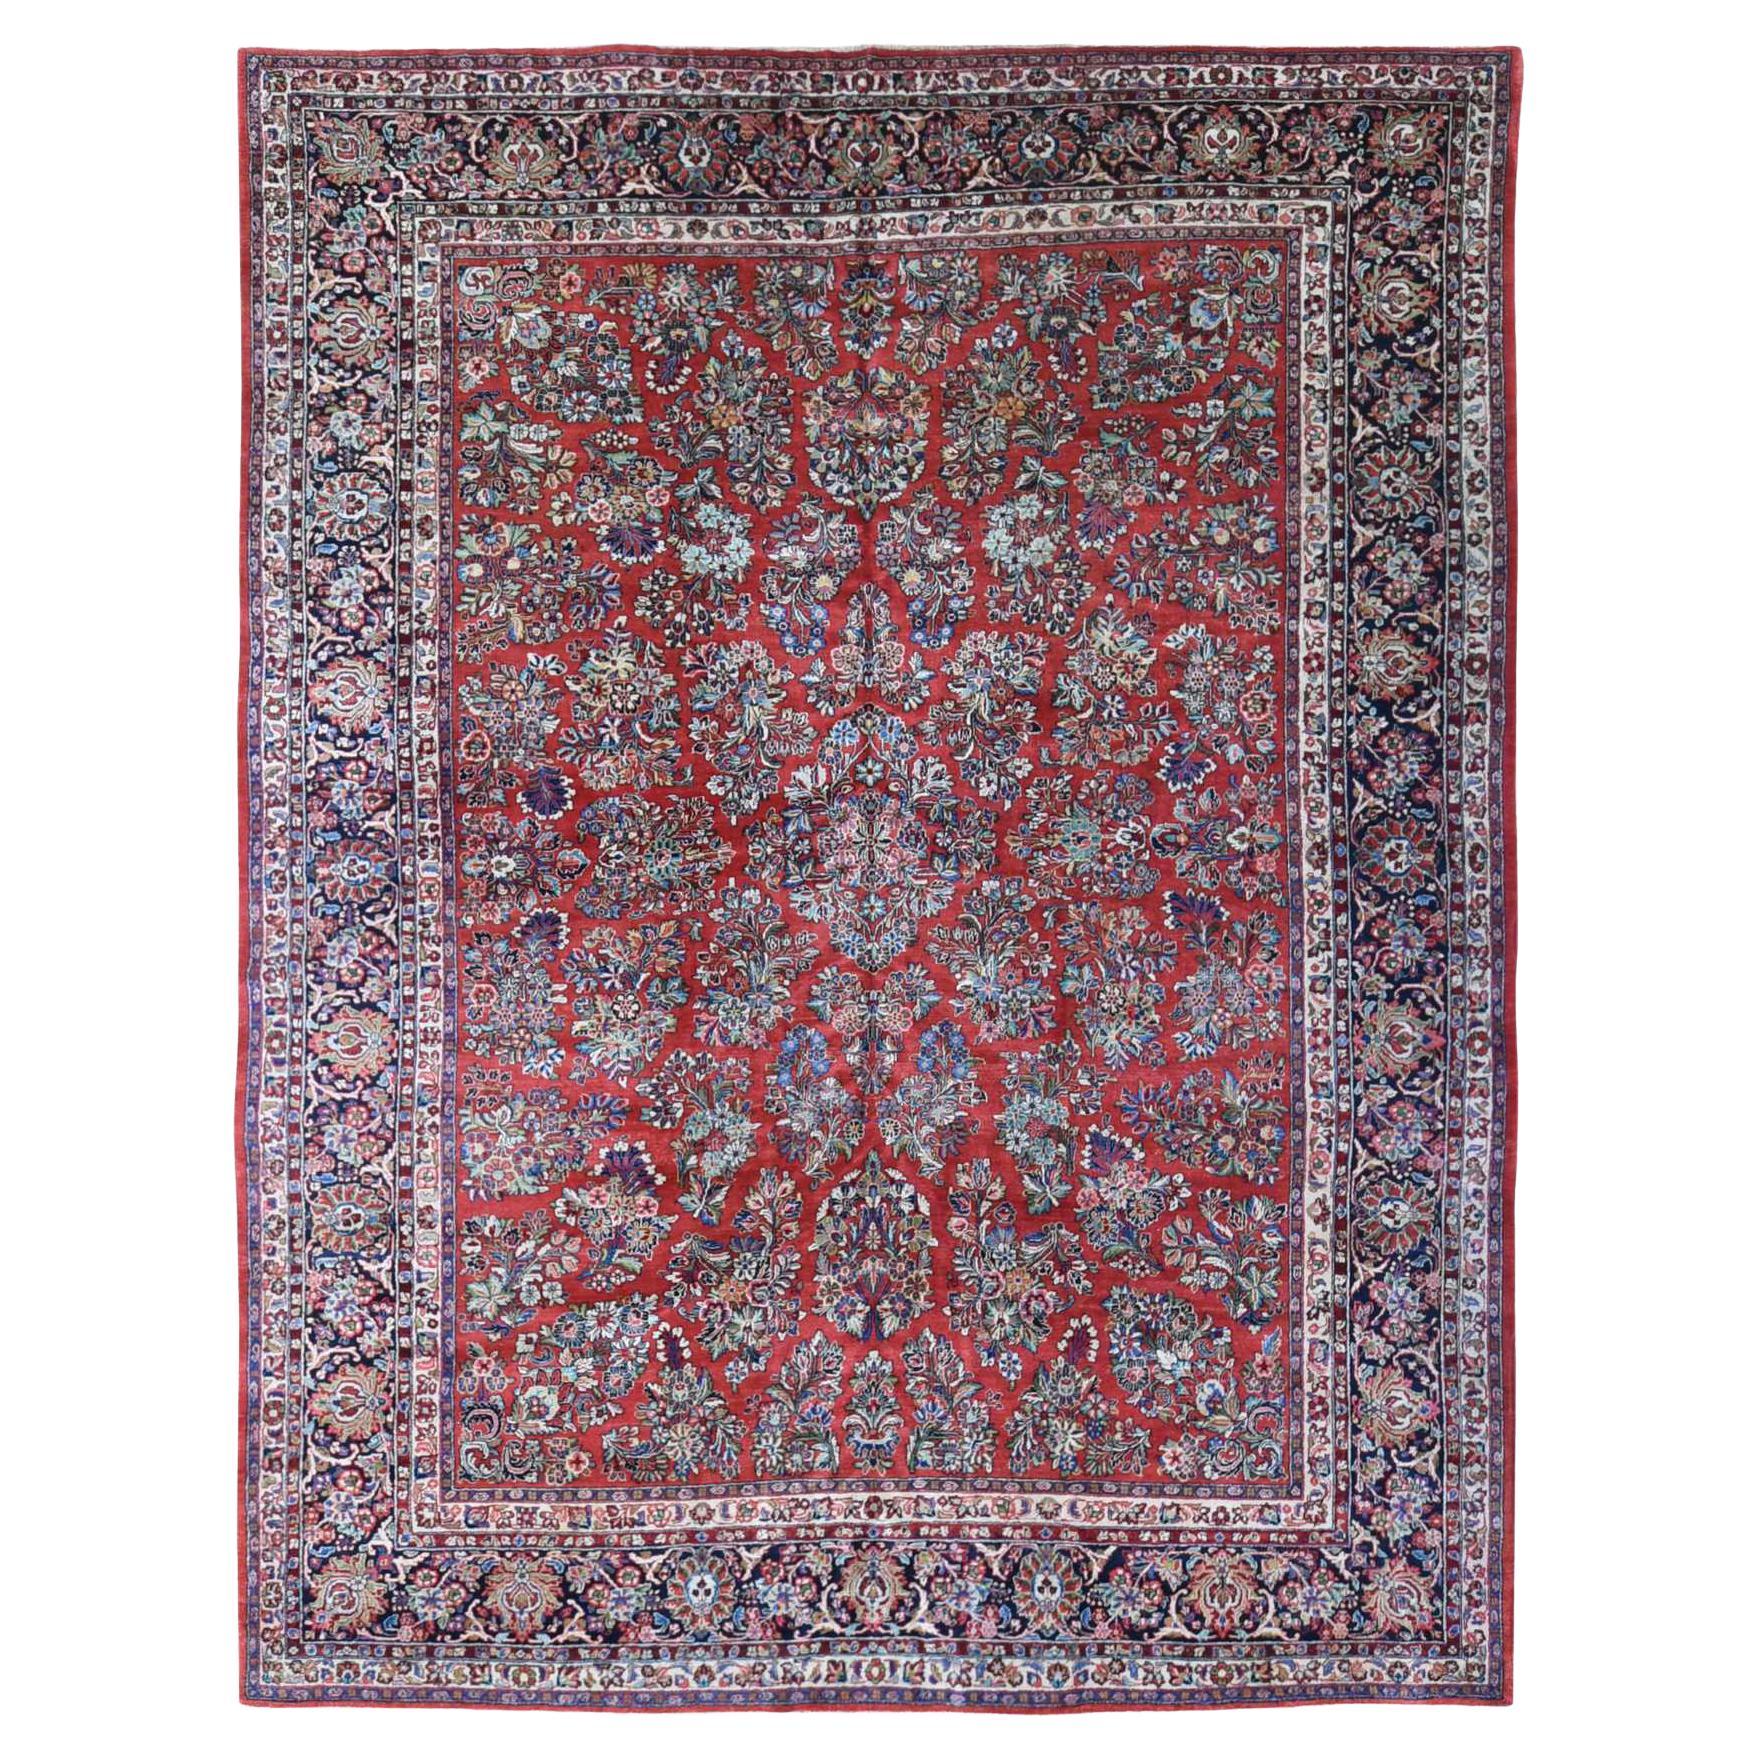 Roter antiker persischer Sarouk-Teppich aus reiner Wolle, handgeknüpft, Vollflor